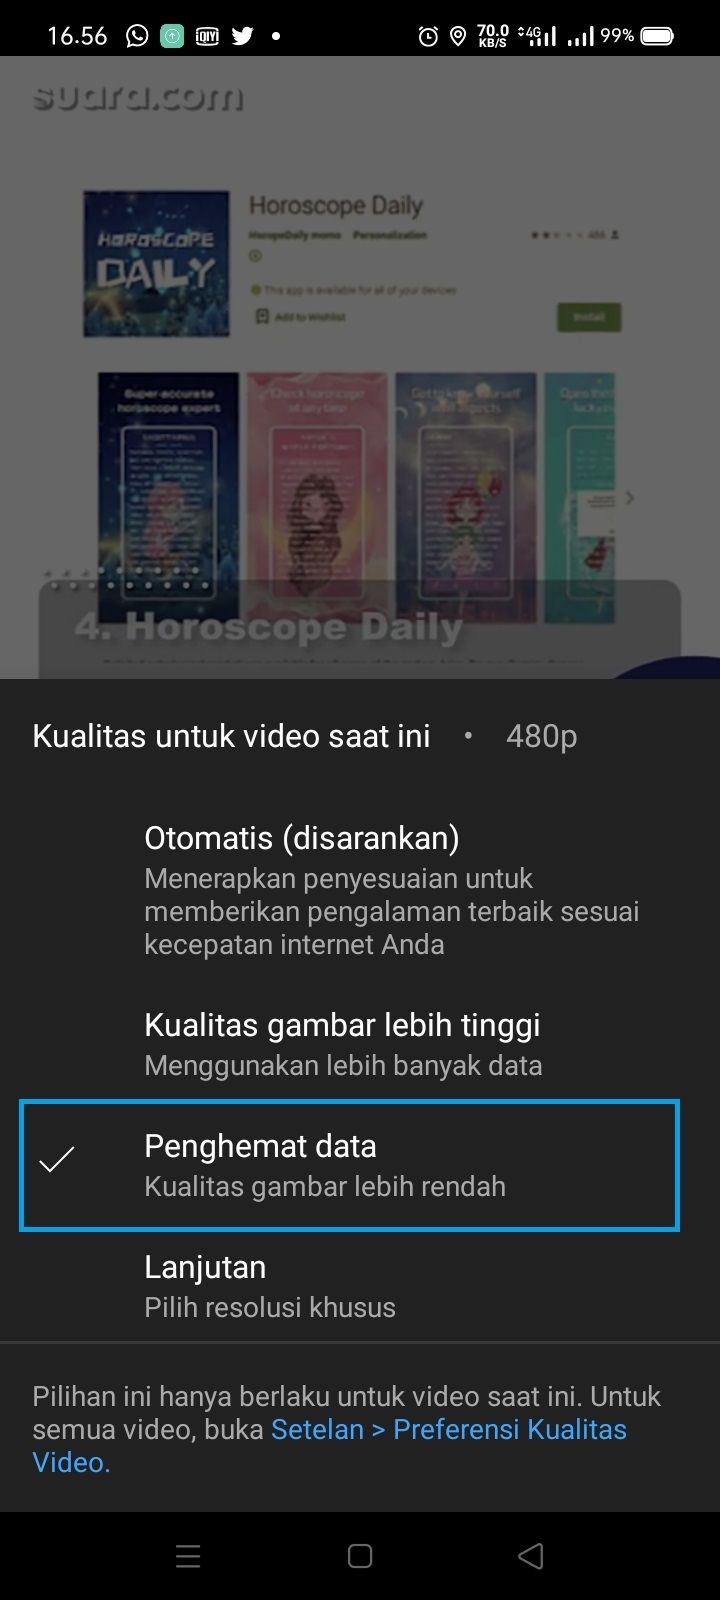 Cara menghemat paket data saat menonton YouTube. (HiTekno.com)